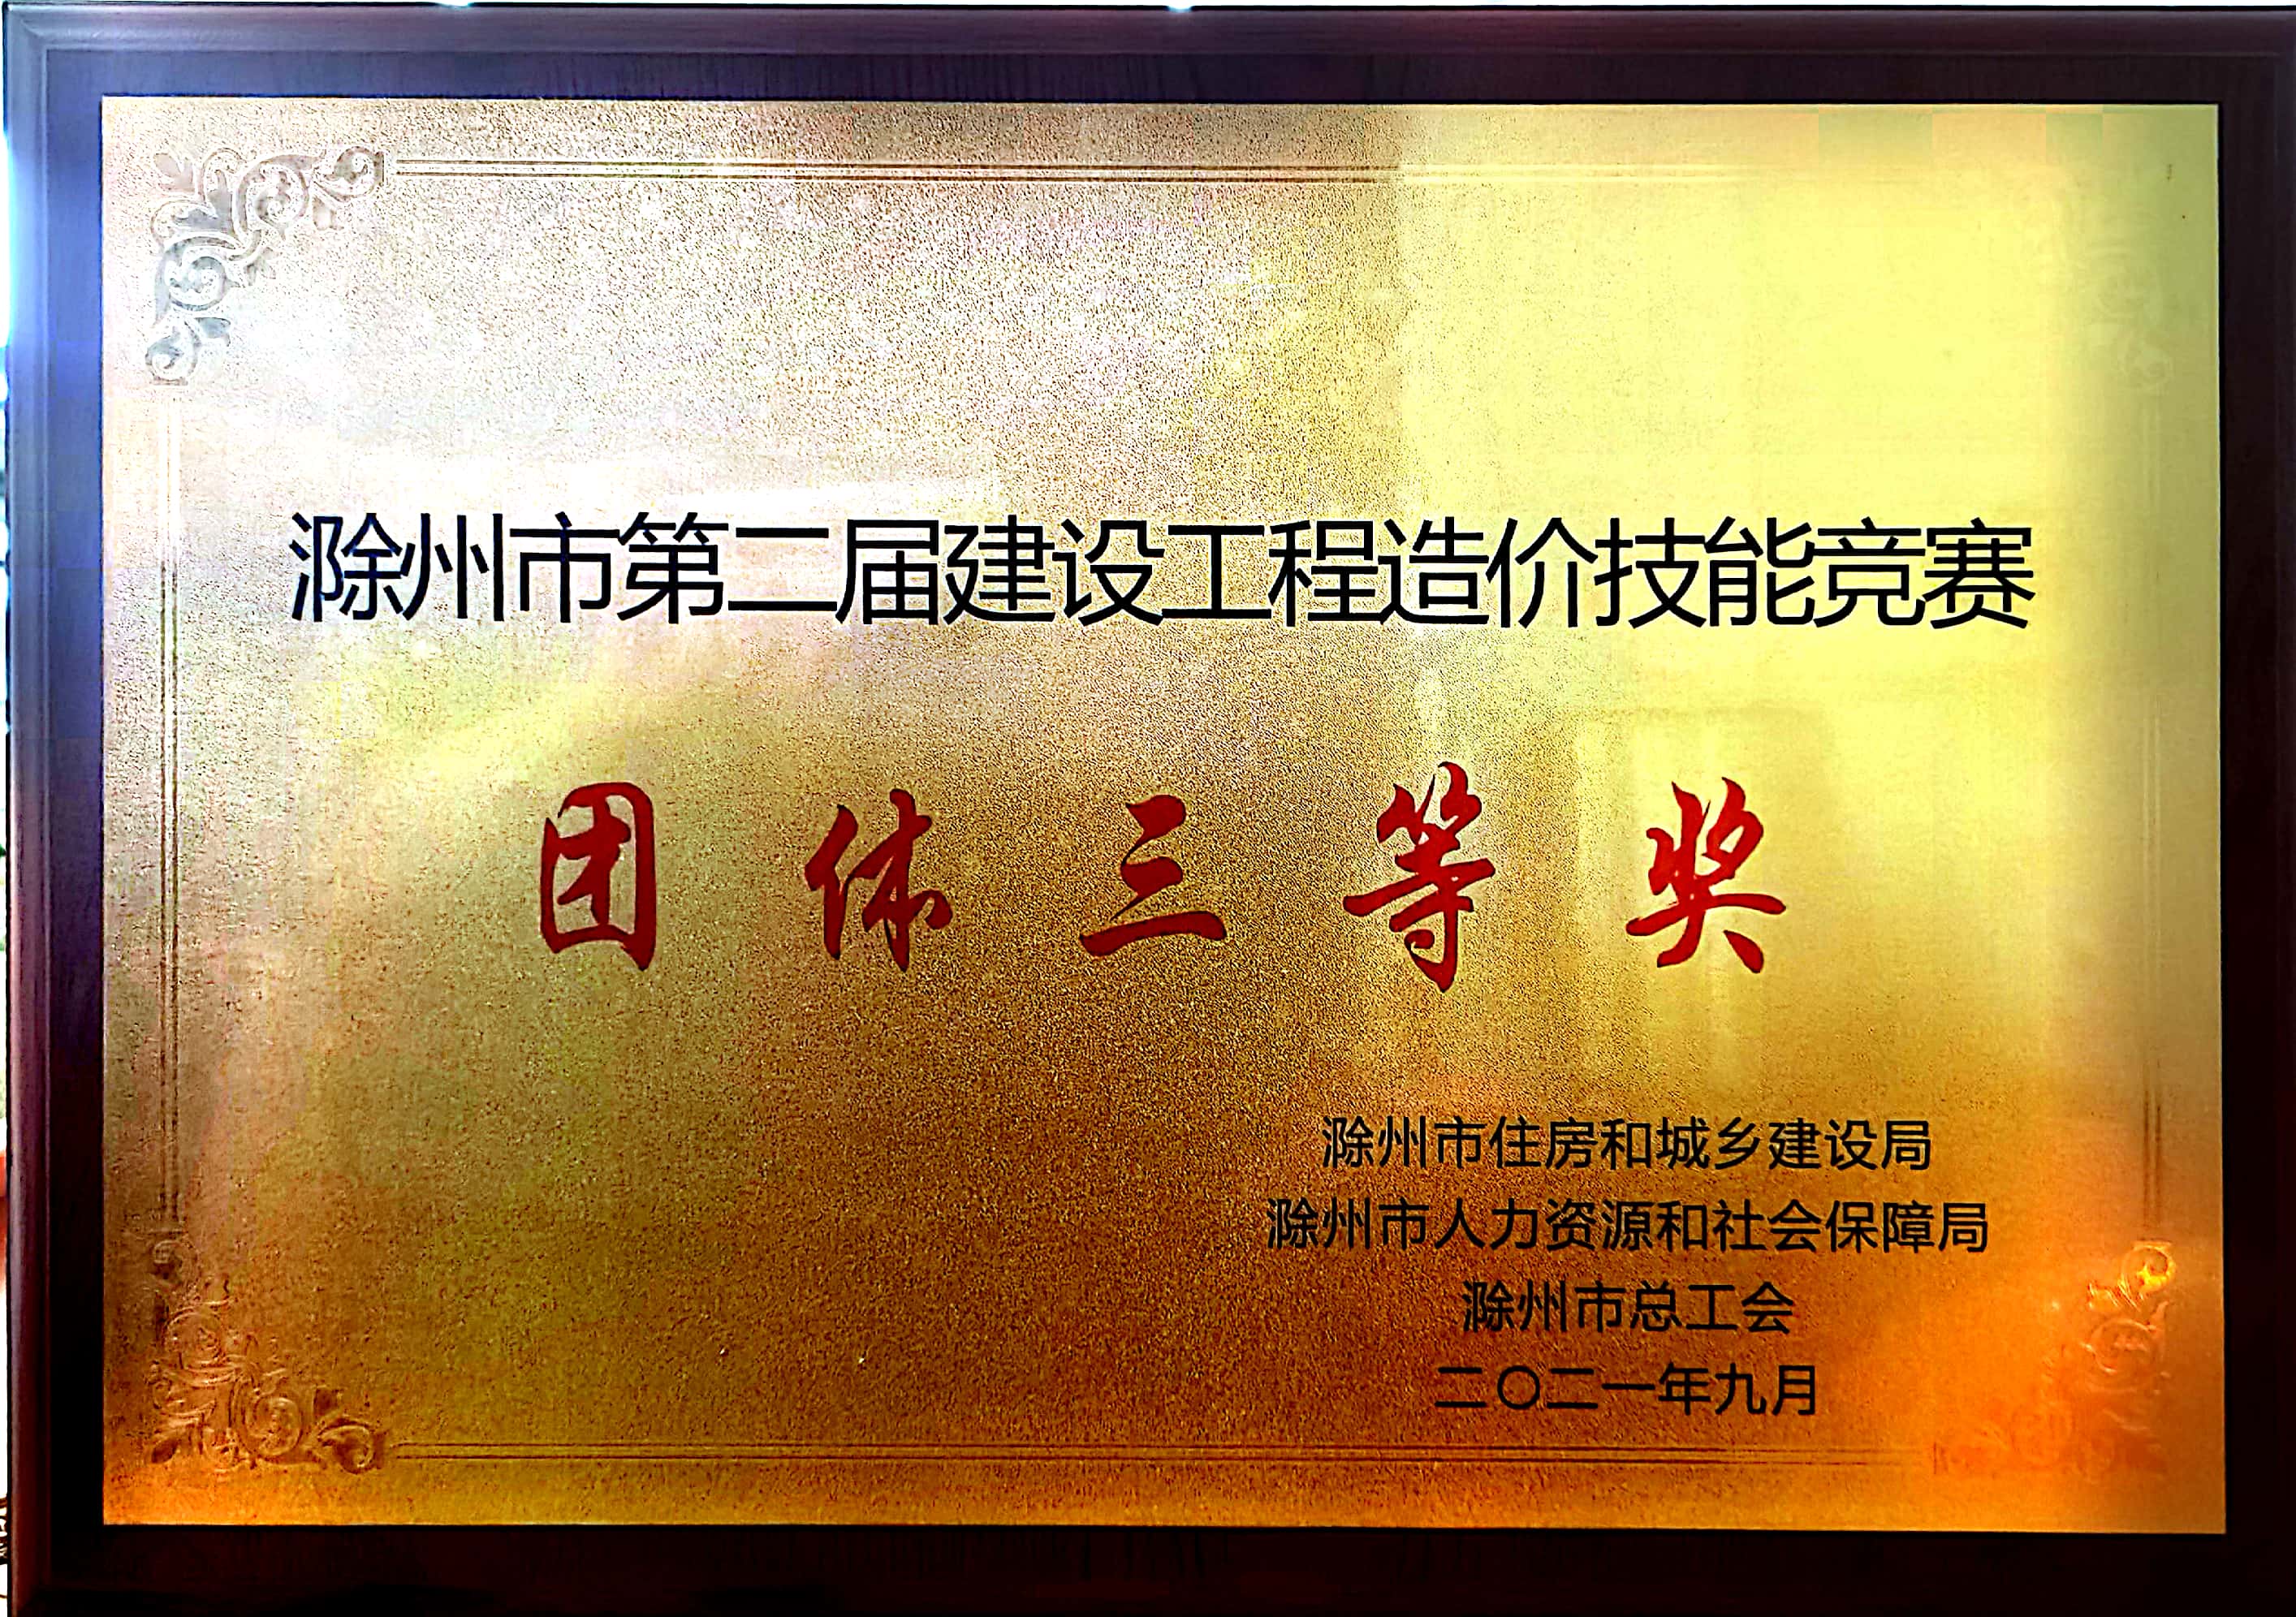 热烈庆祝我公司在“滁州市第二届建设工程造价技能竞赛“”中荣获团体三等奖